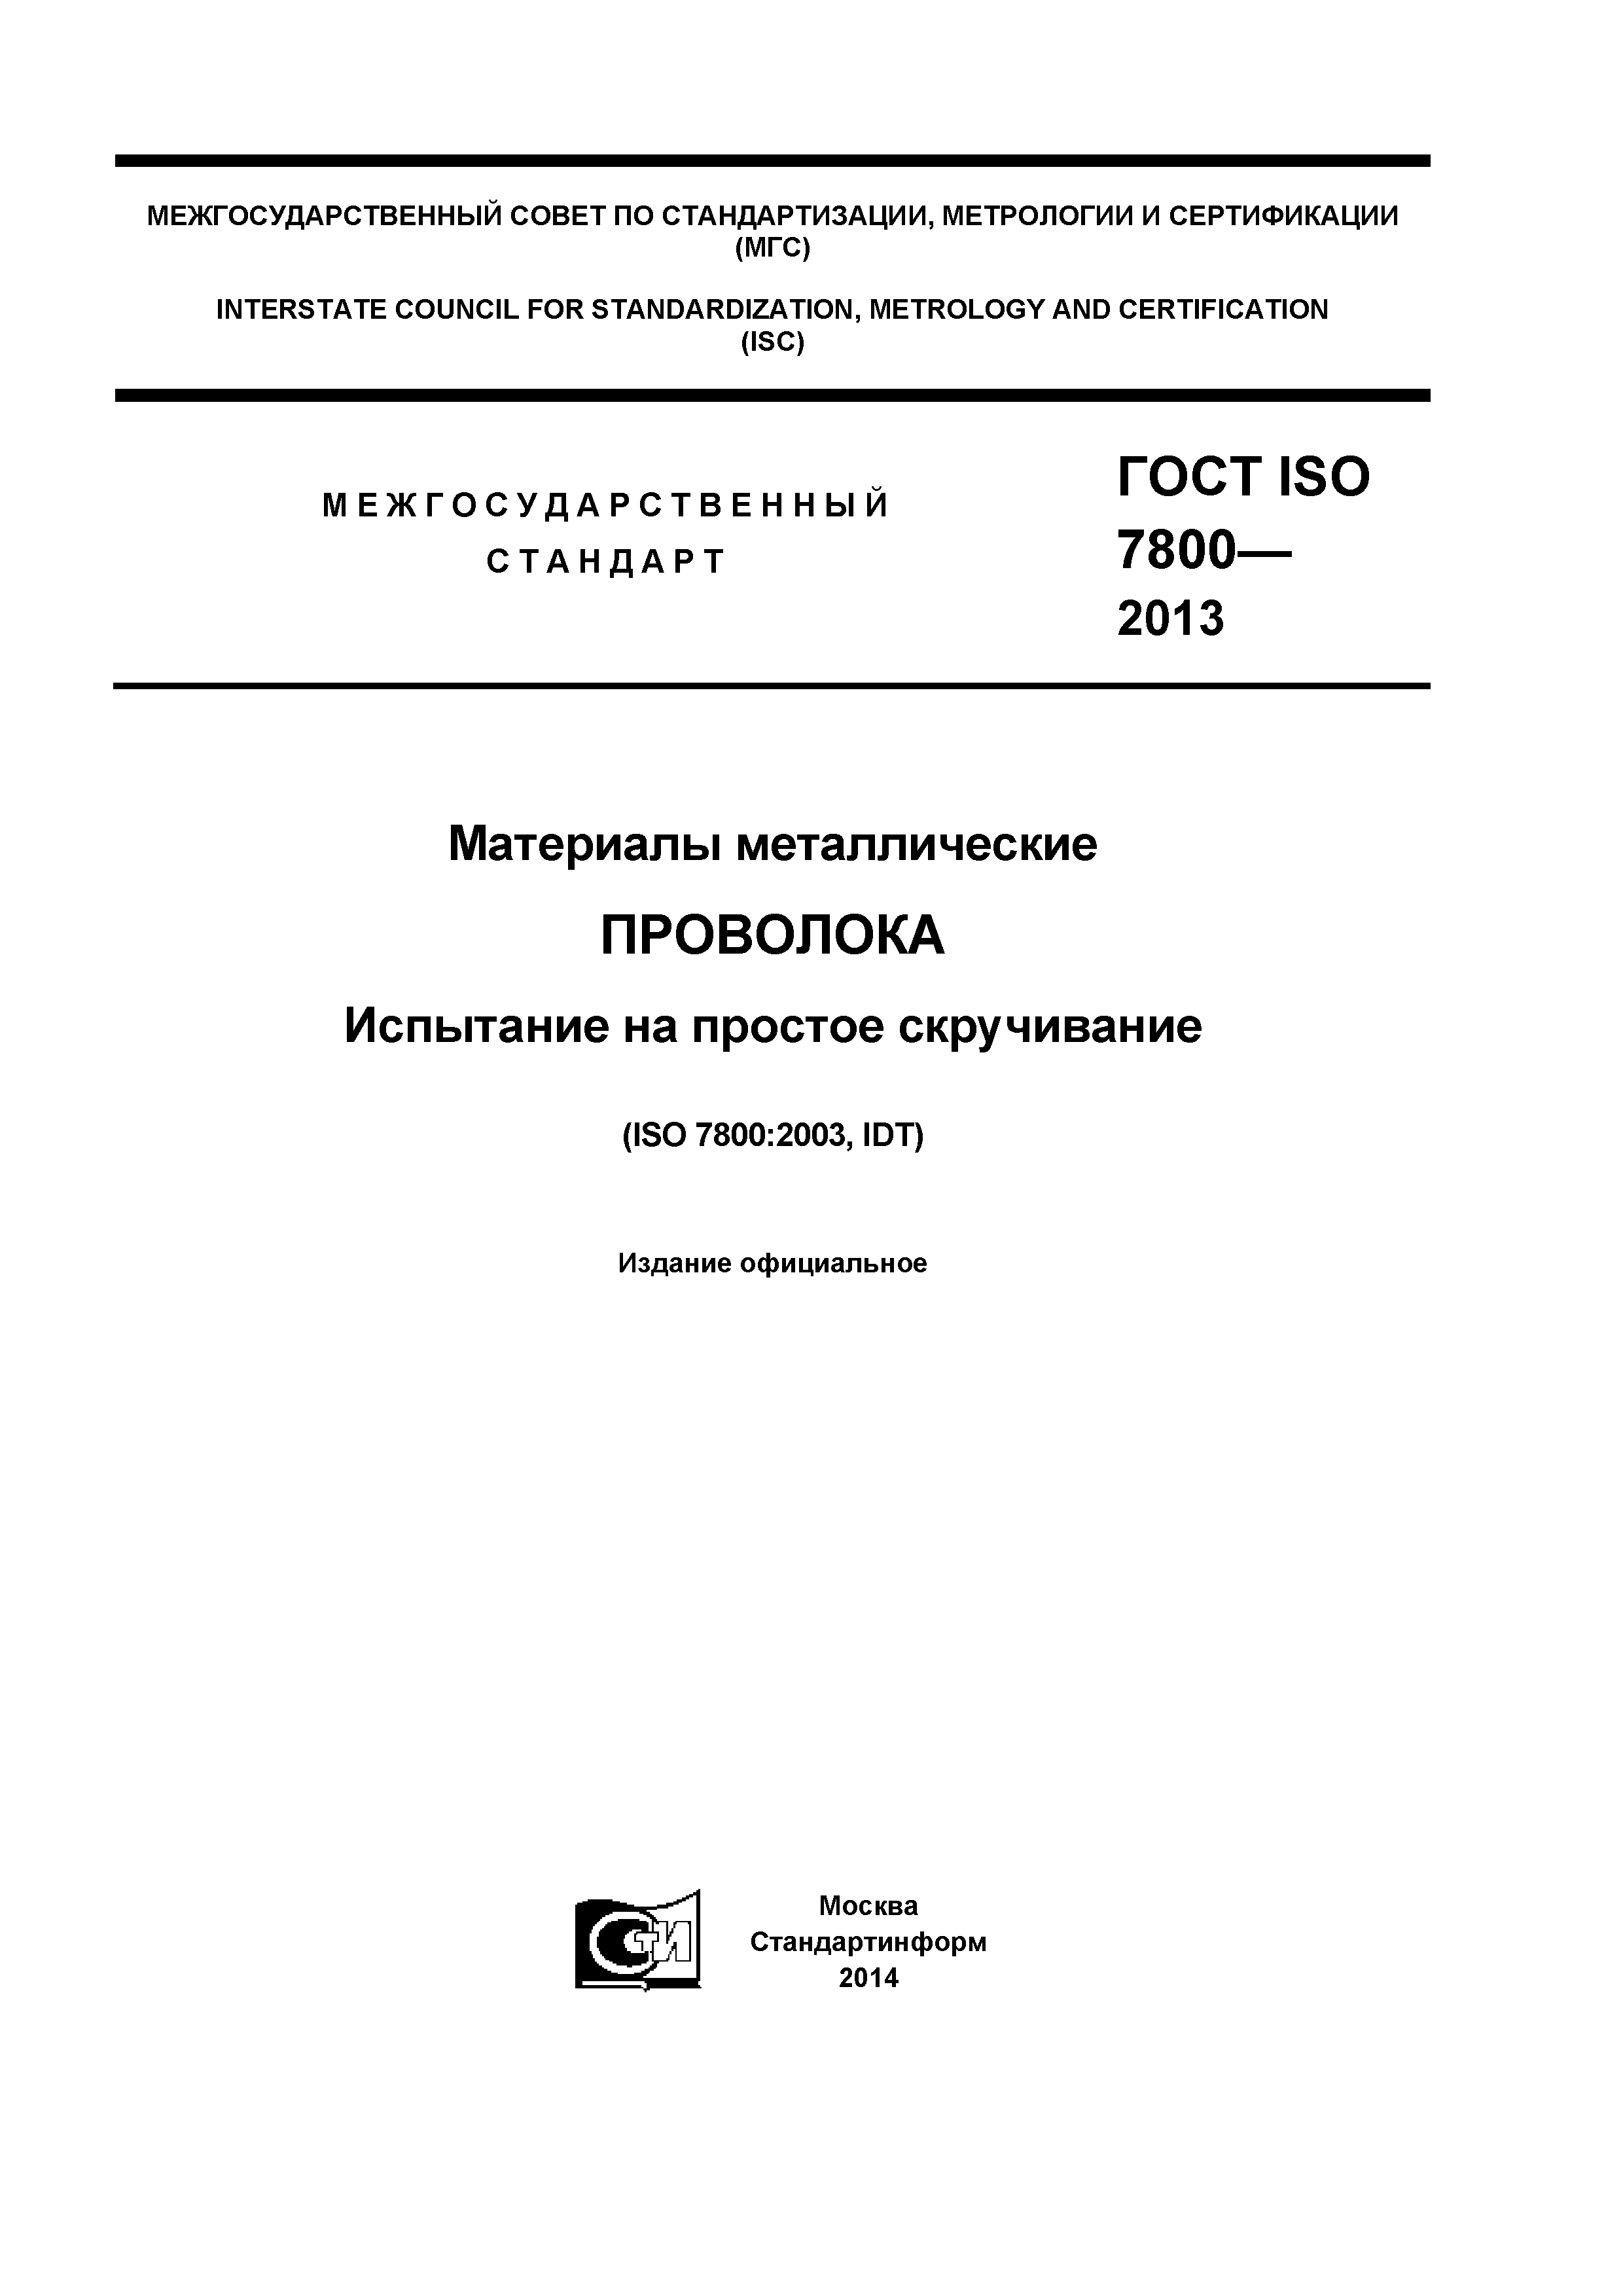 ГОСТ ISO 7800-2013